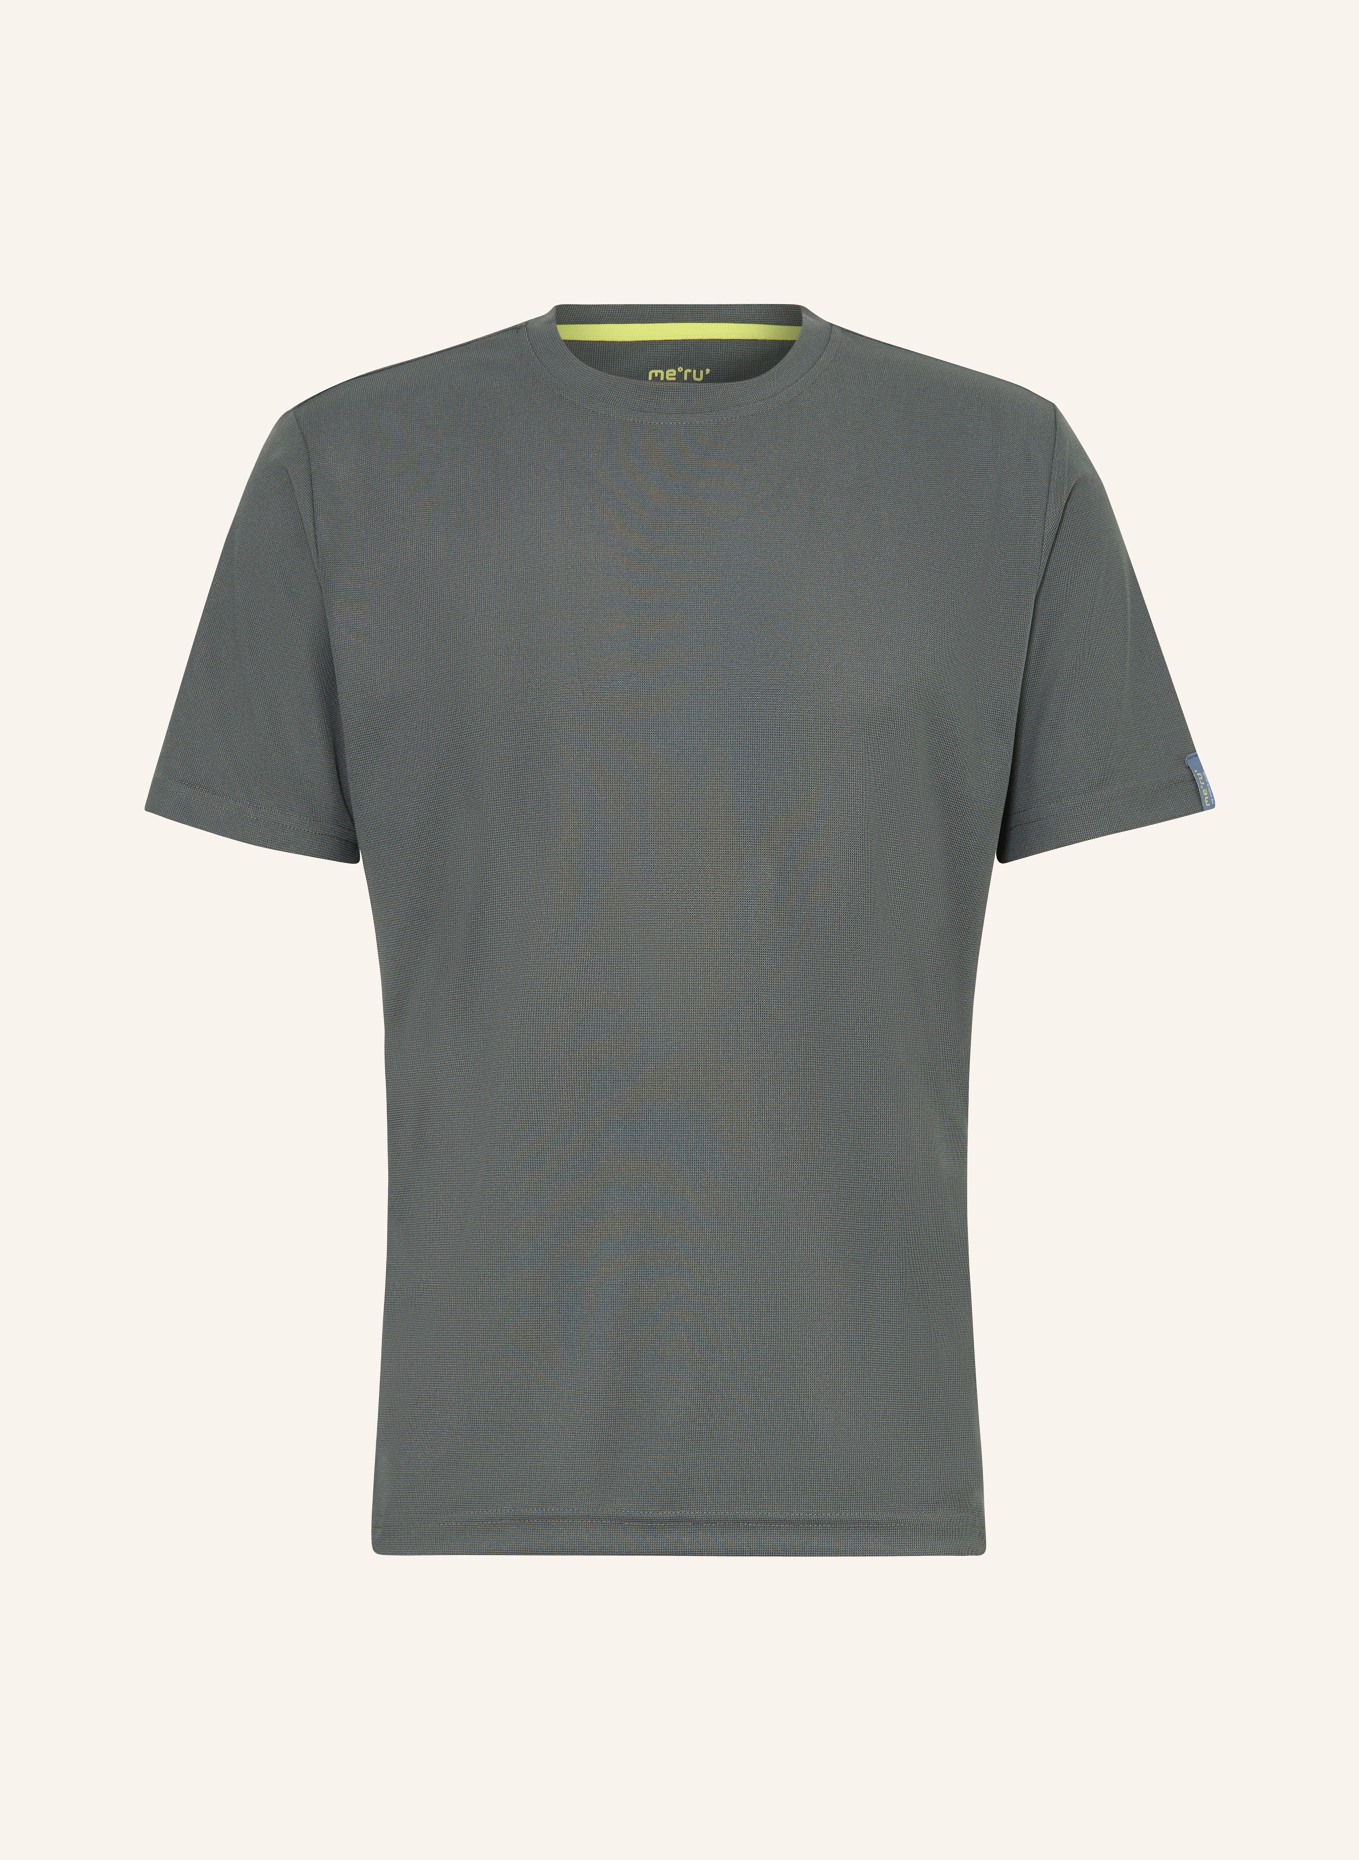 me°ru' T-Shirt BRISTOL, Farbe: PETROL (Bild 1)